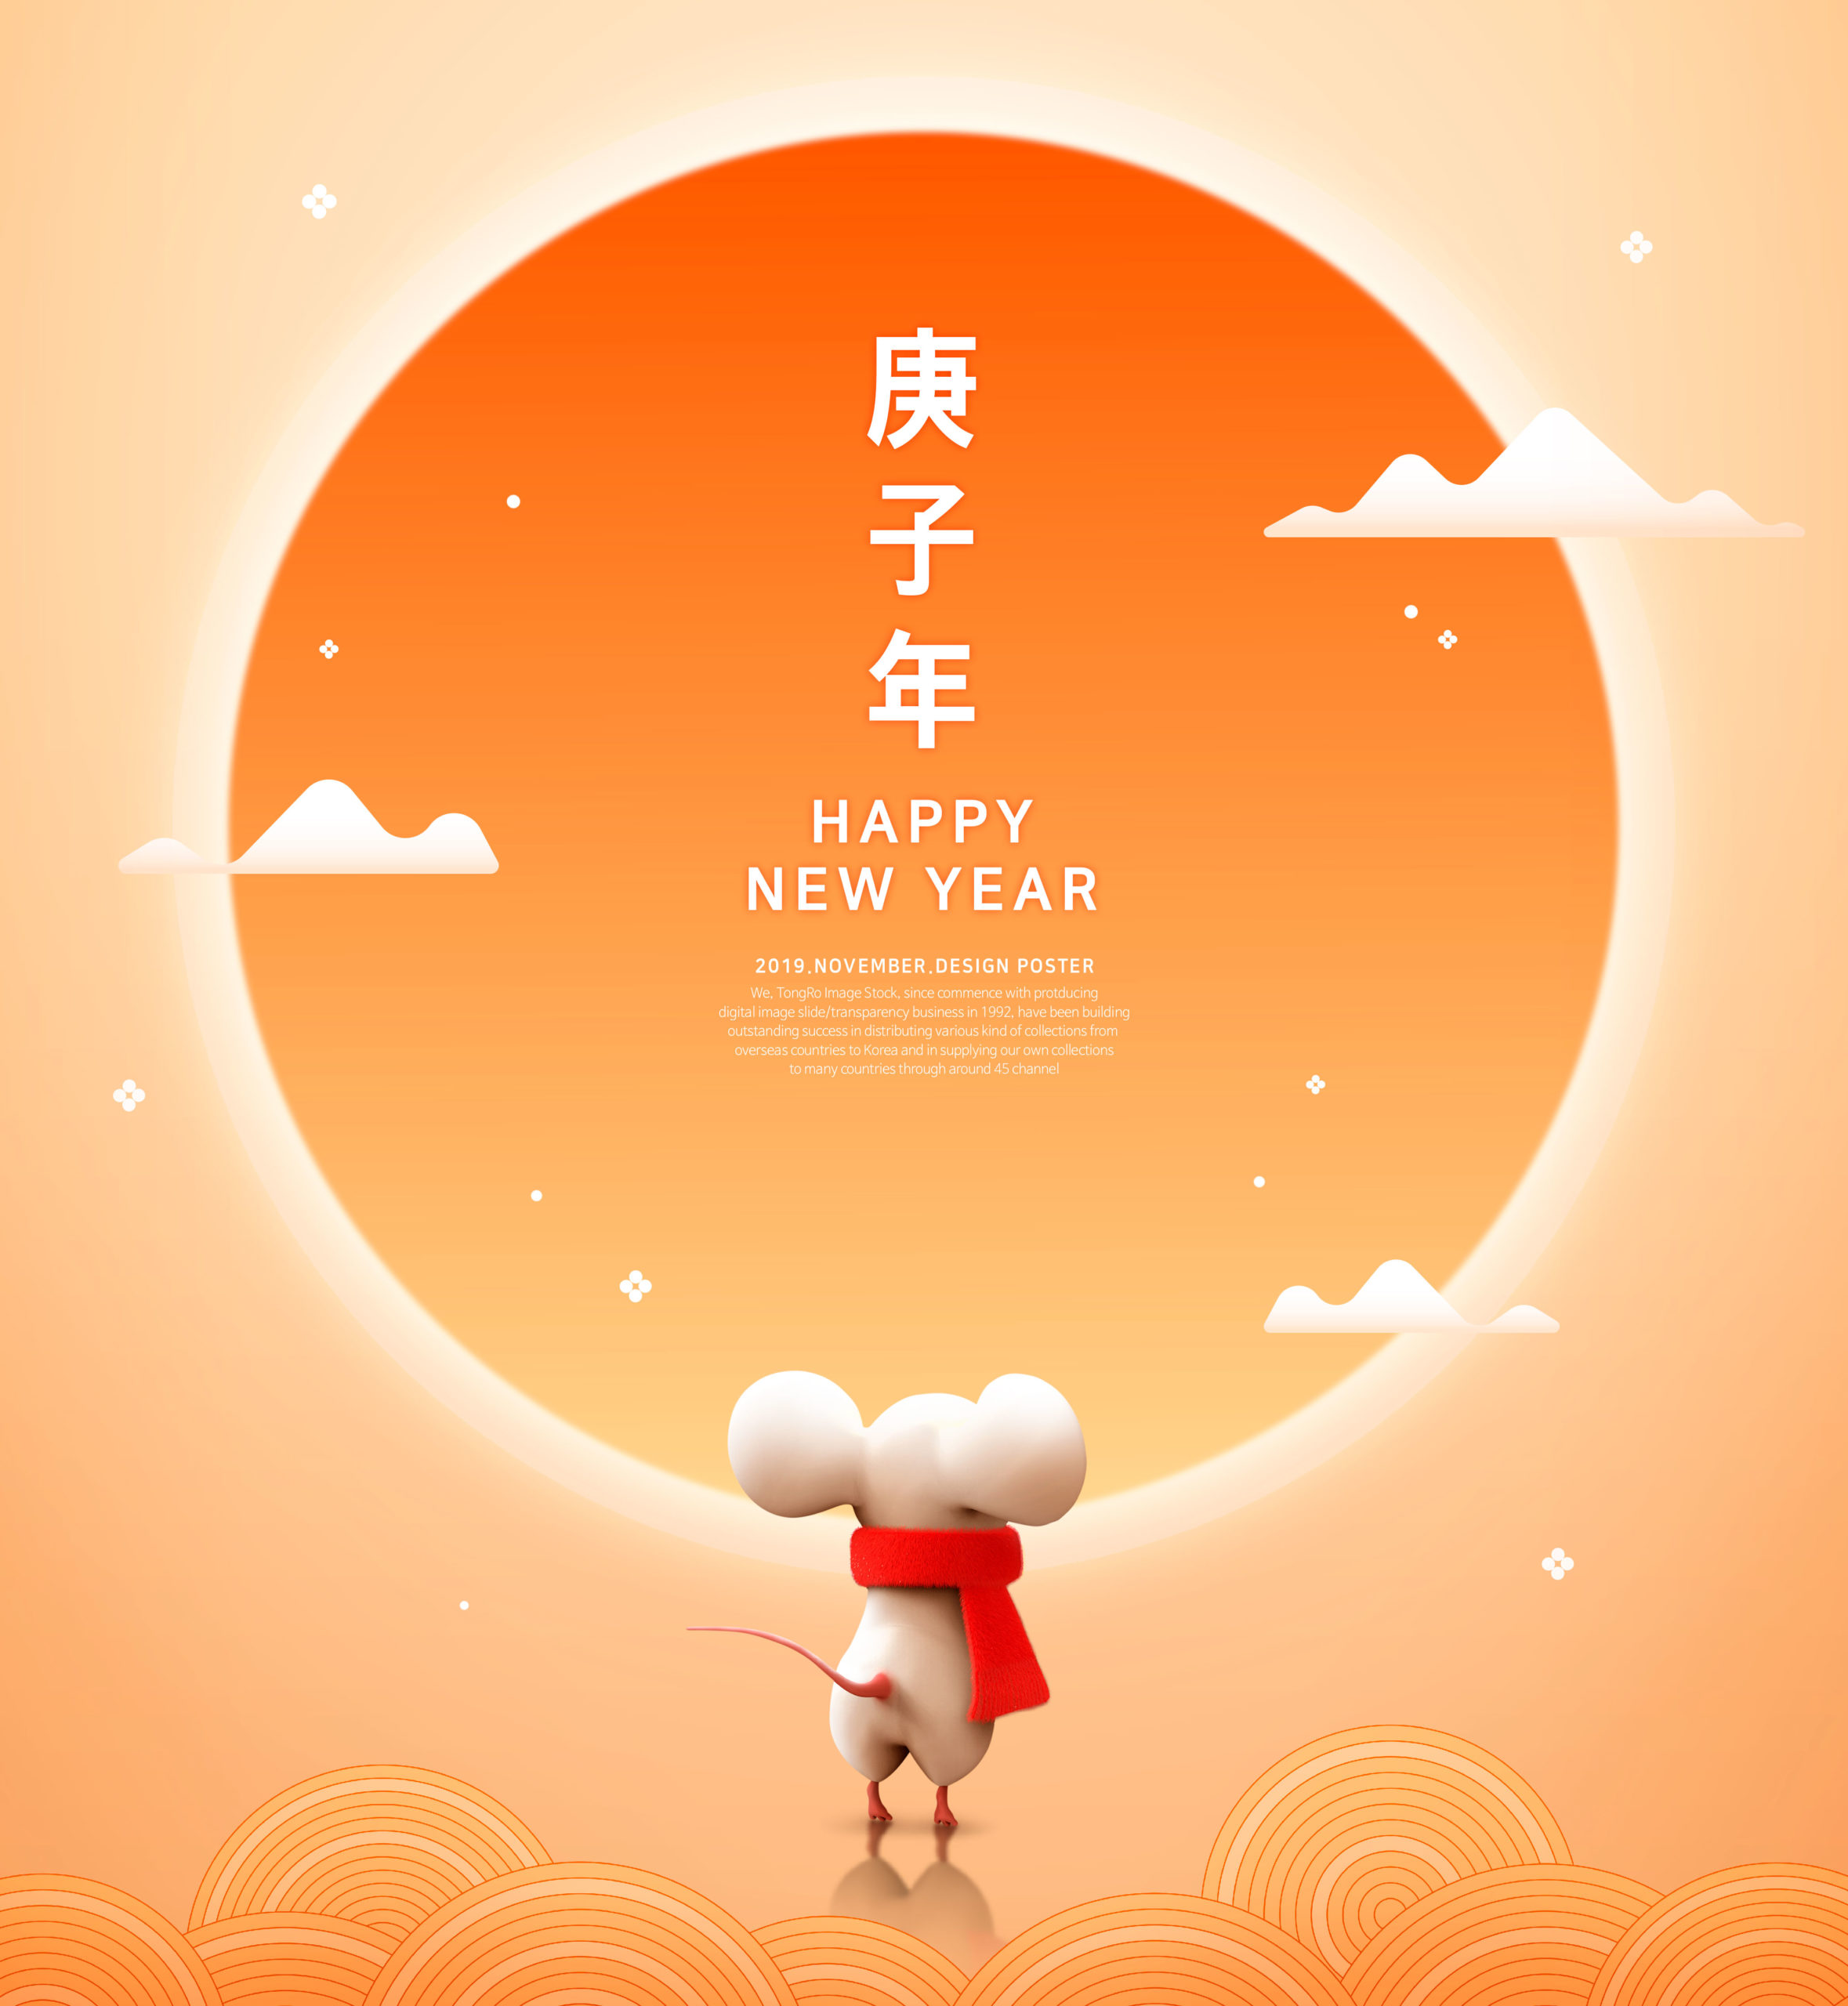 可爱小老鼠2020鼠年/庚子年/新年快乐主题海报模板[PSD]插图(4)